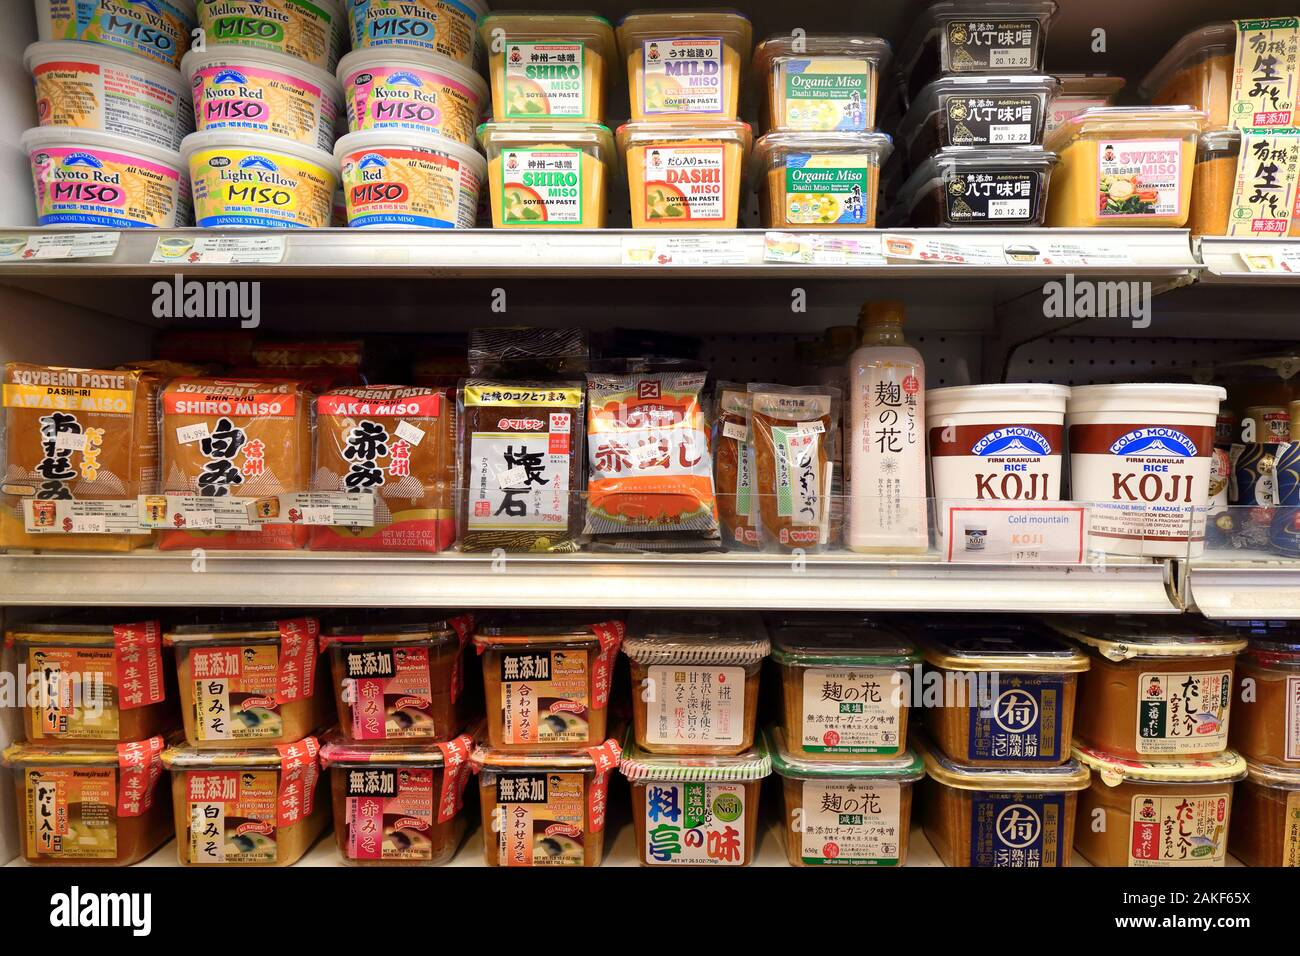 Diferentes marcas de pasta miso y pasta de soja fermentada en un estante del refrigerador en un supermercado japonés-americano Foto de stock